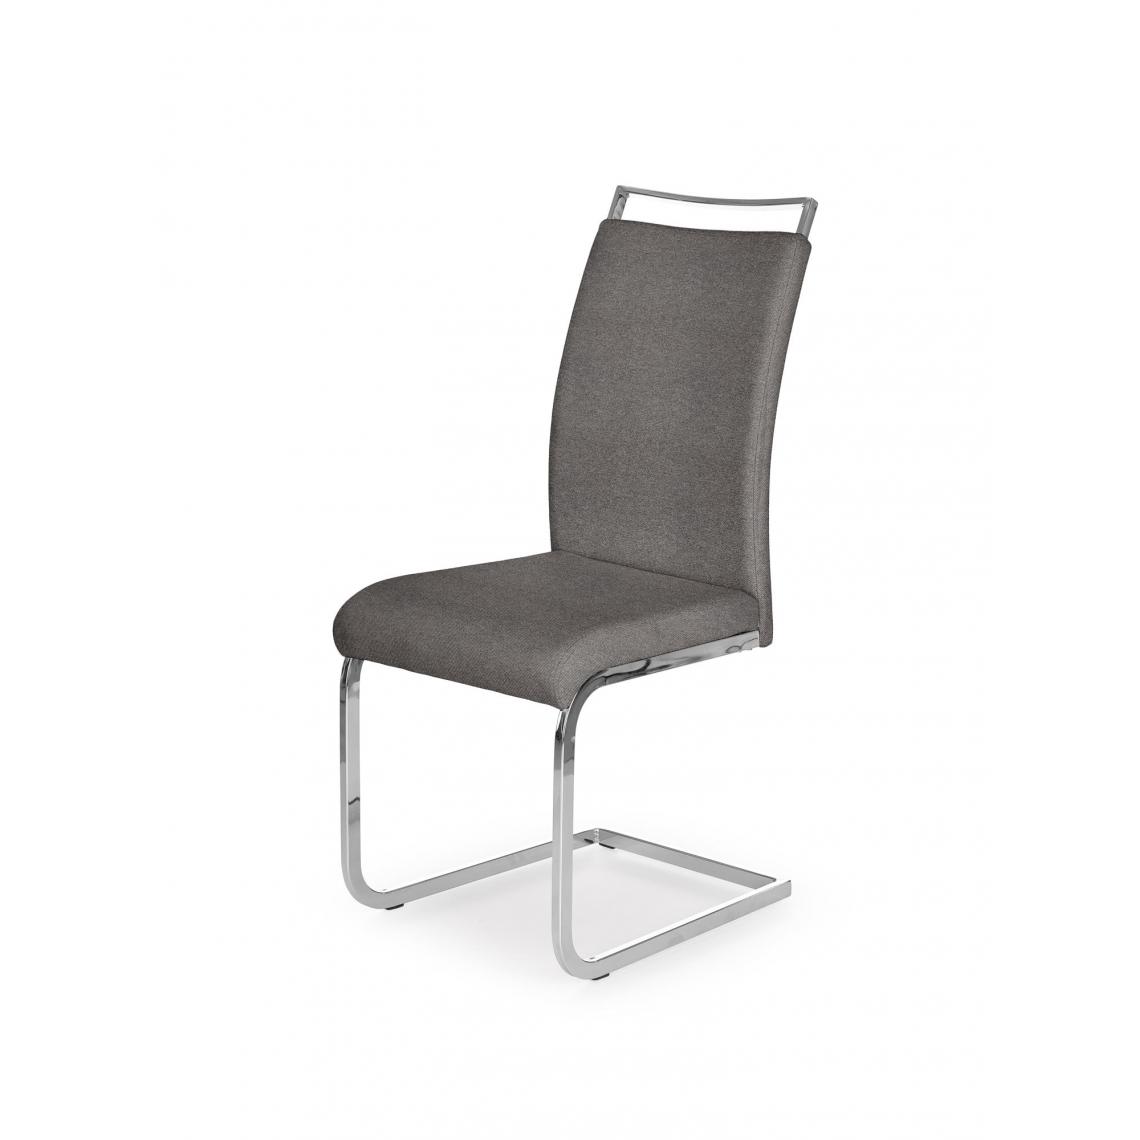 Hucoco - BELMIRO - Chaise rembourrée style moderne salon/chambre - 99x59x42 - Base chromée - Meuble de salle à manger - Gris - Chaises